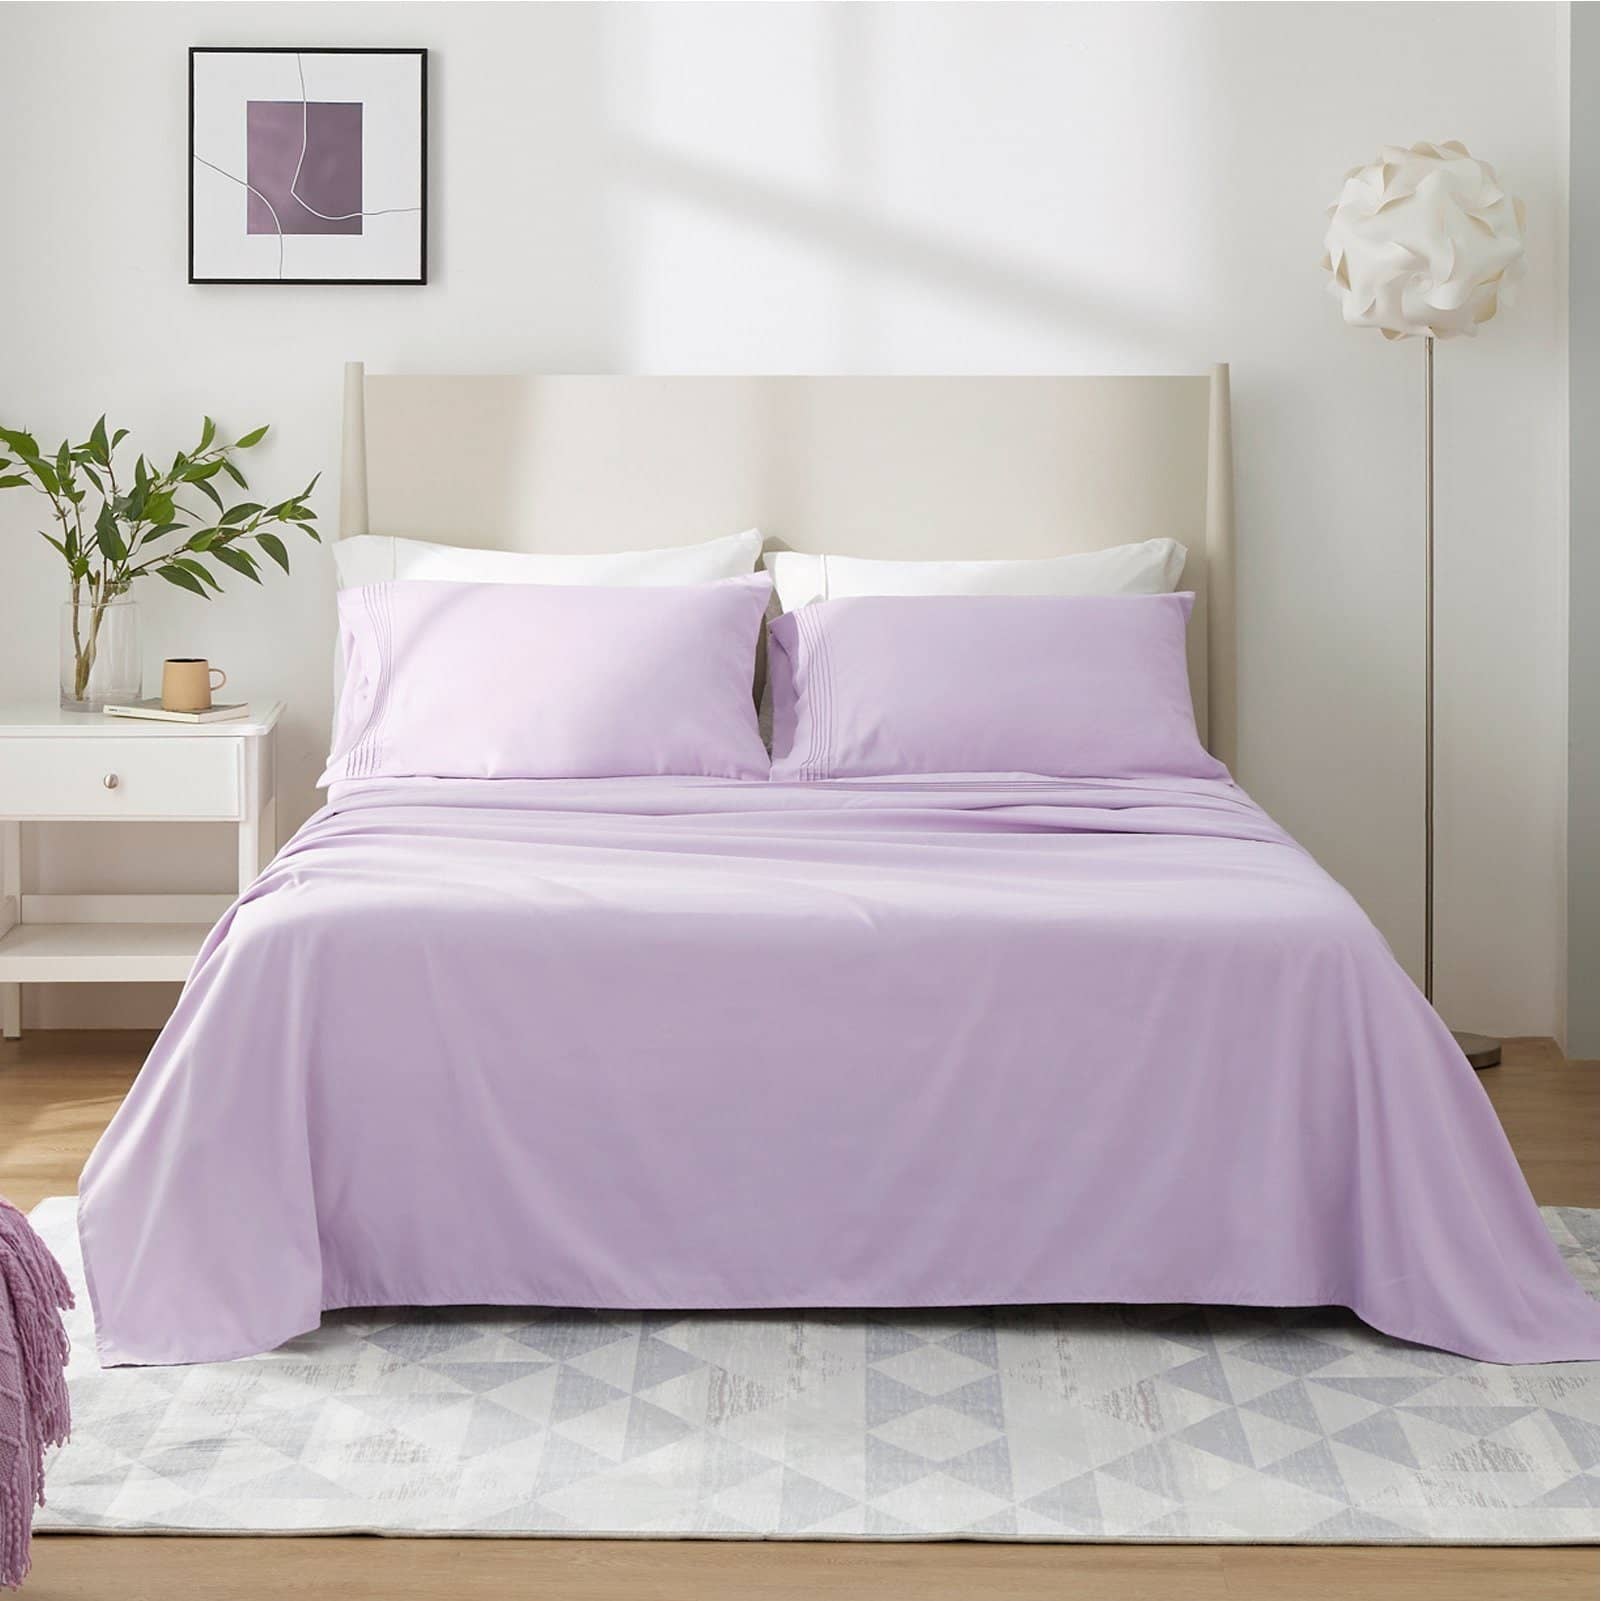 Bedsure | Moisture-Wicking Sheet Set lightg purple